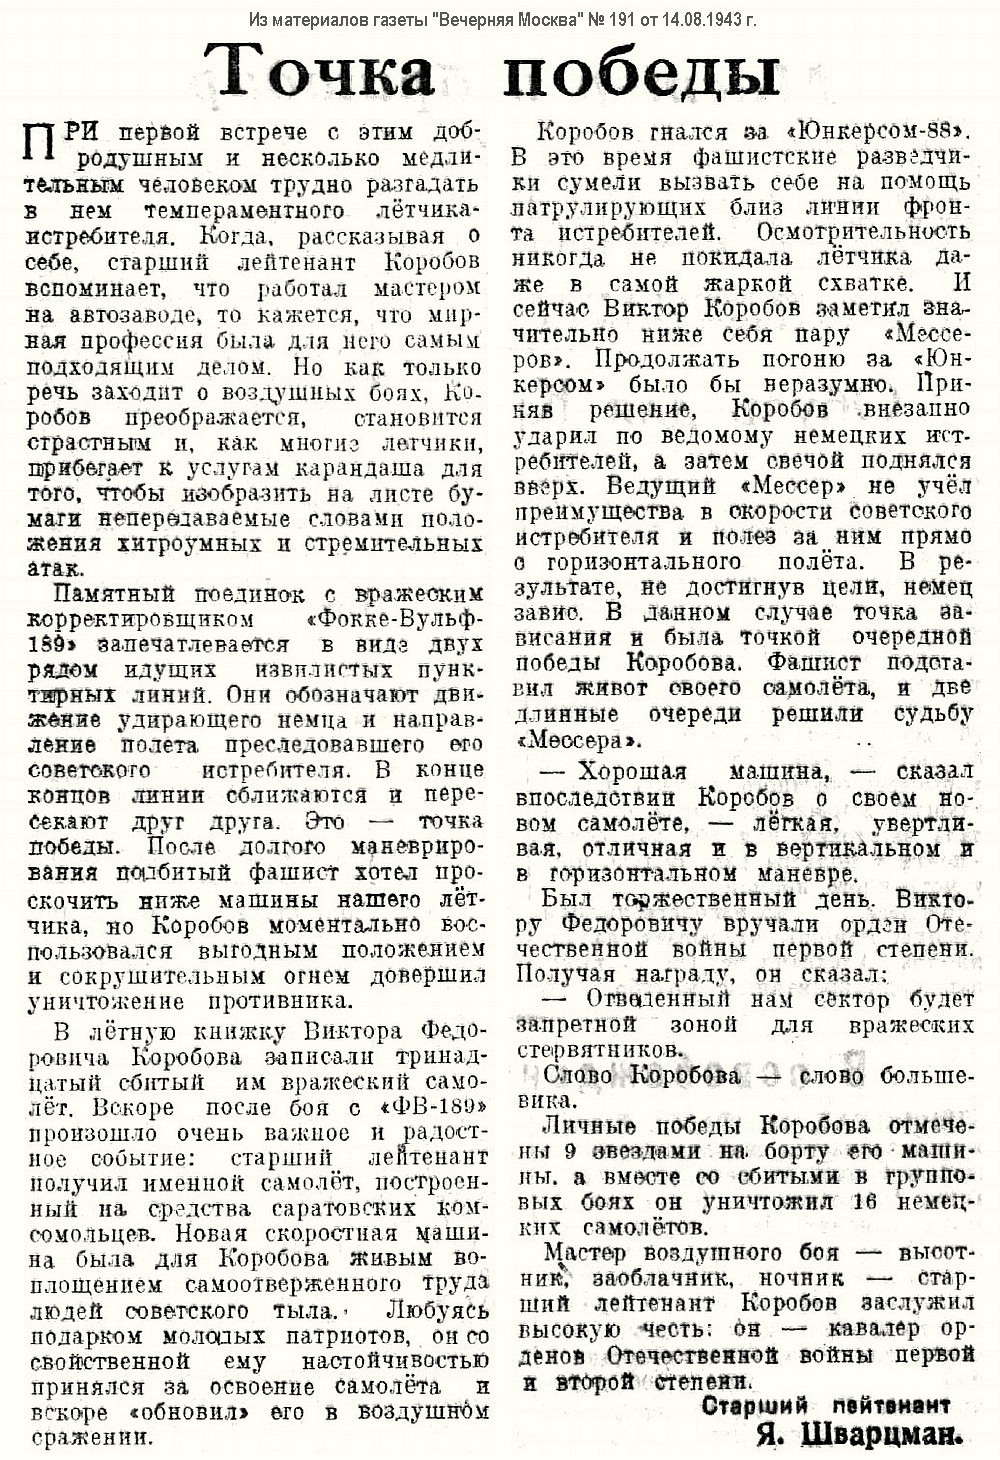 Коробов Виктор Фёдорович в материалах прессы за 1943 г.